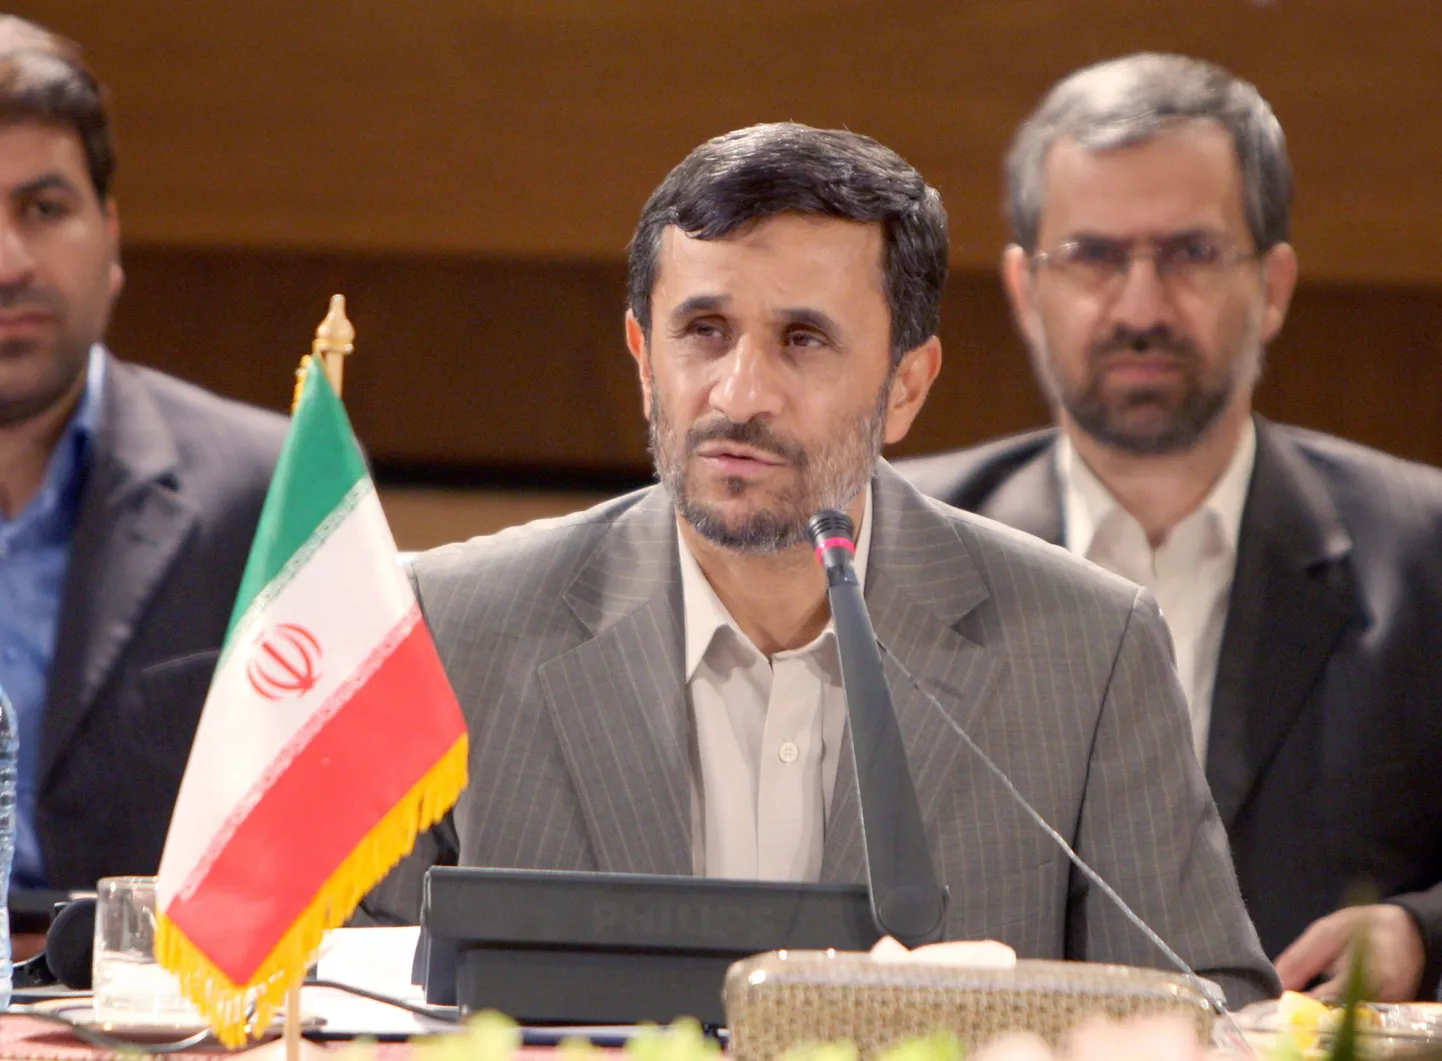 Iraani ametlikult tagasi valitud president Mahmoud Ahmadinejad.